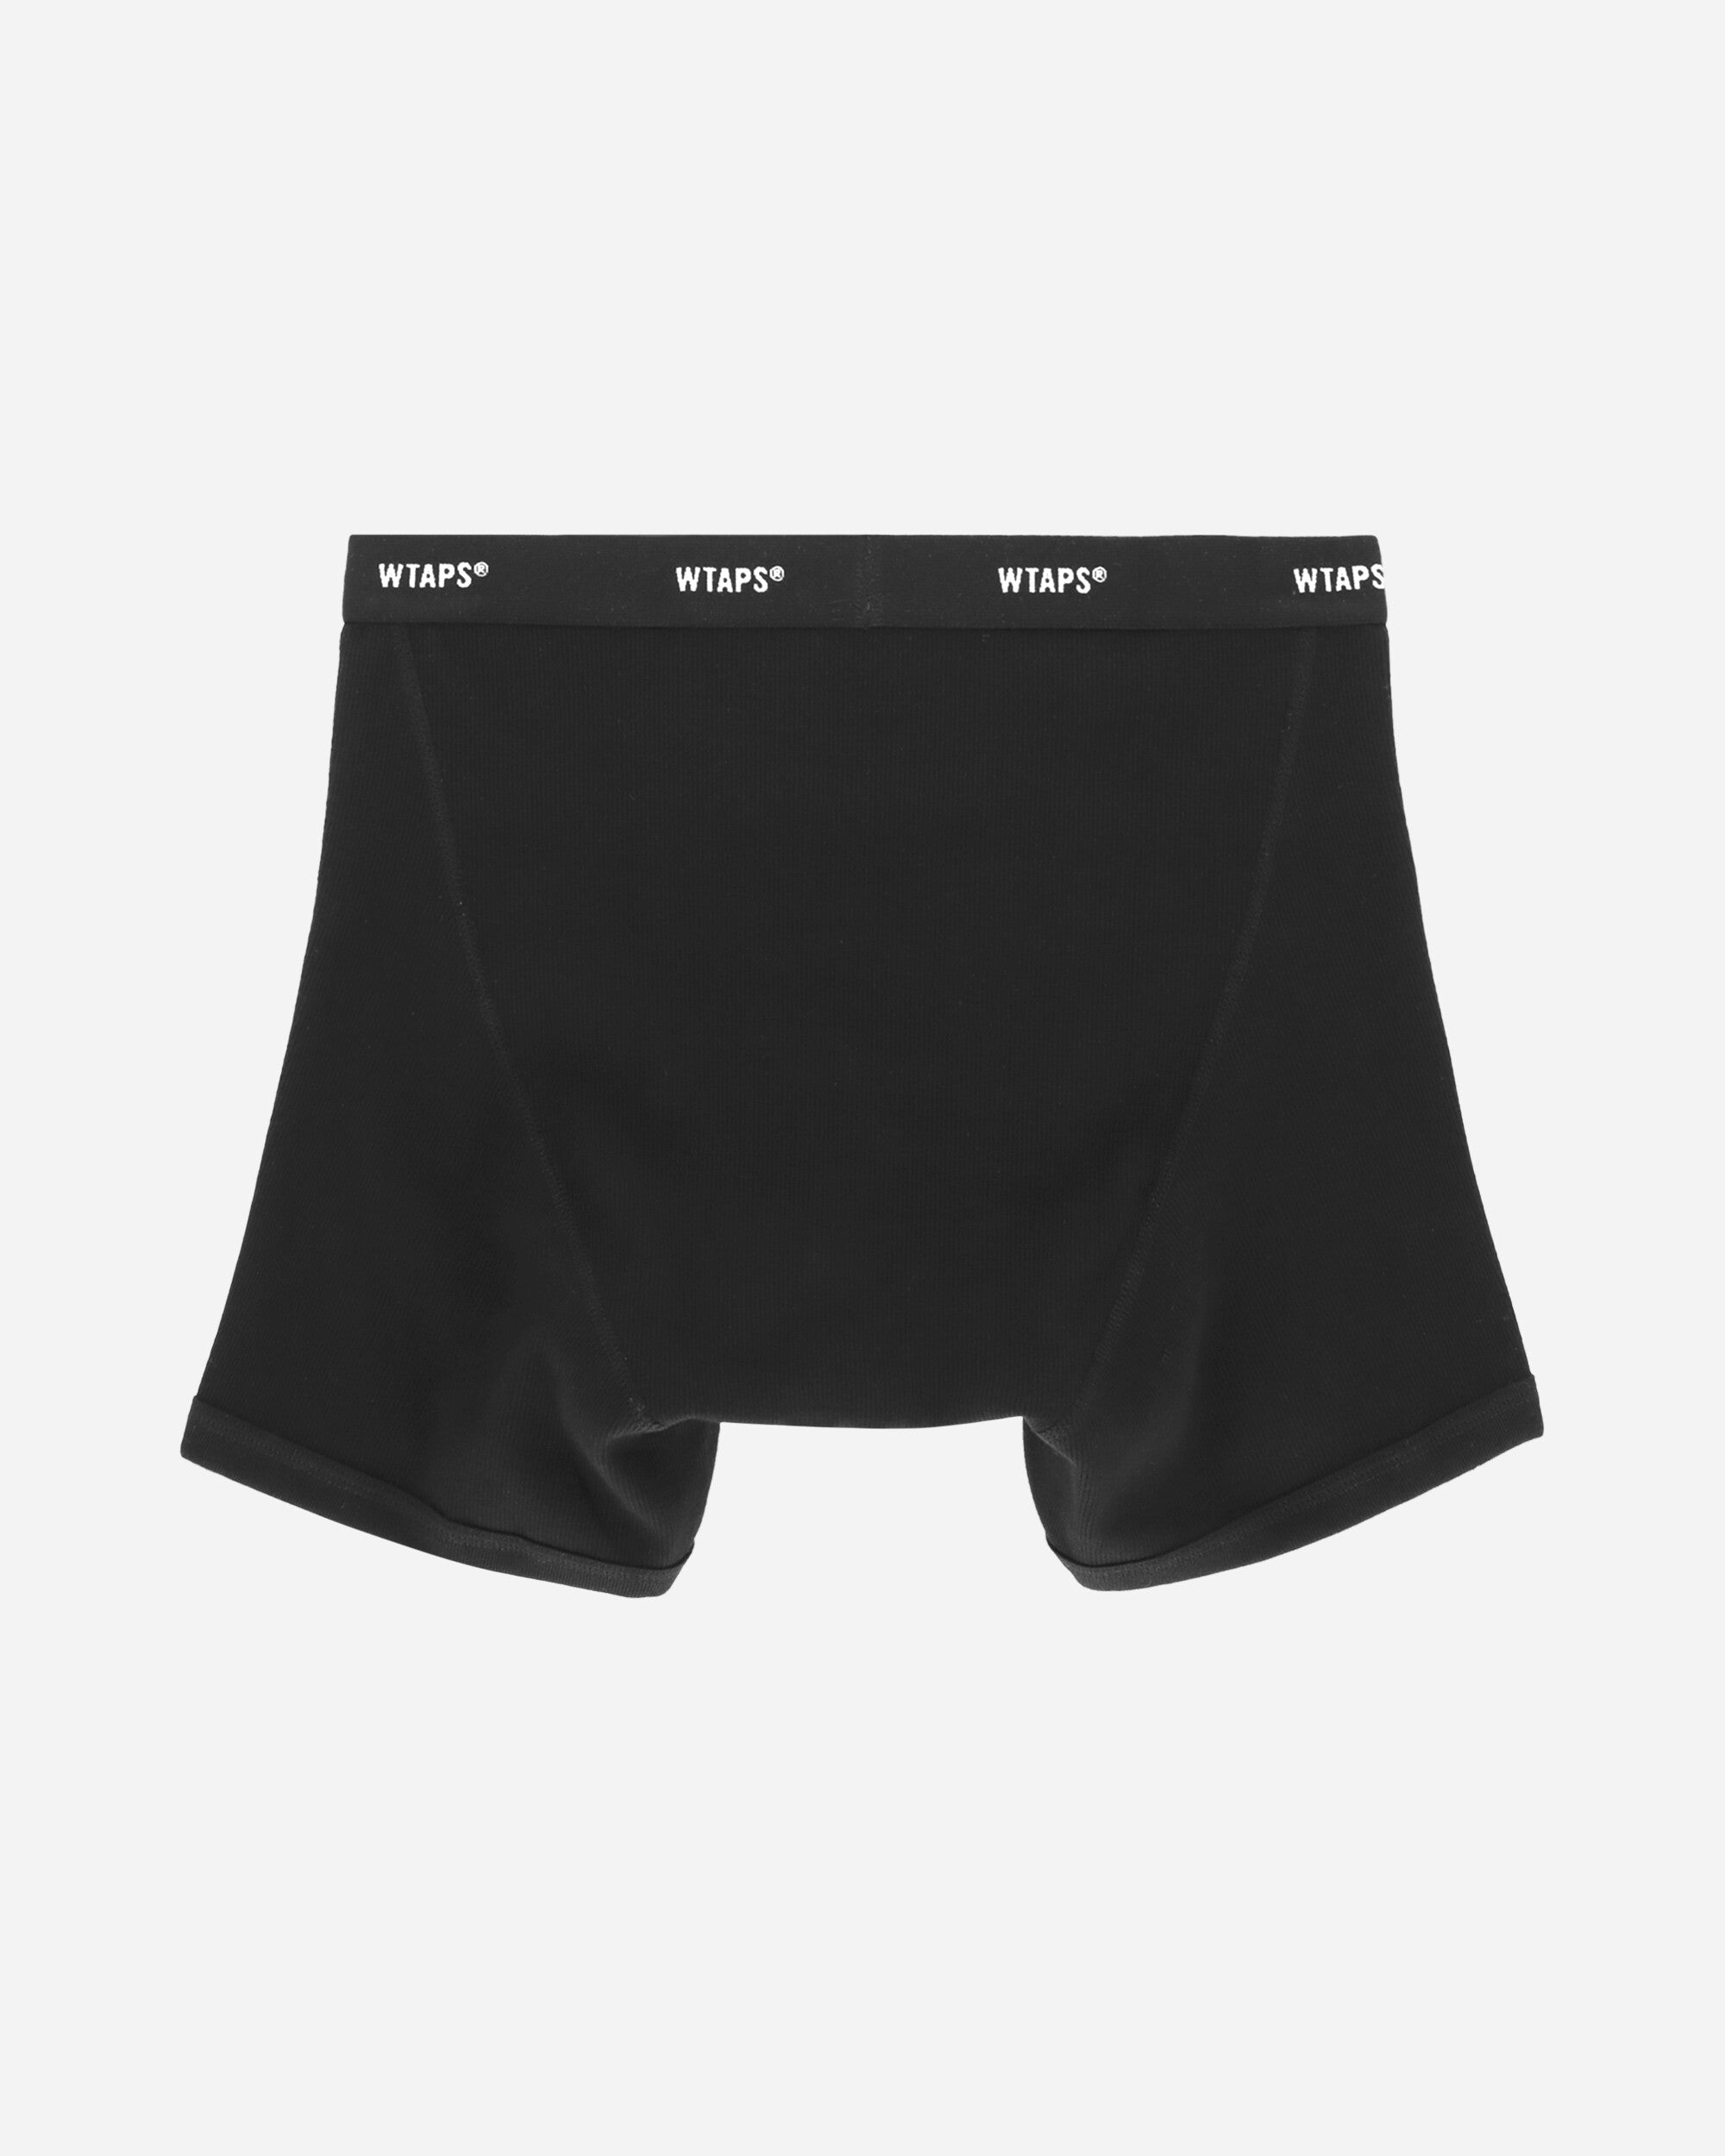 WTAPS Underwear 03 Black Underwear Boxers 232MYDT-UWM03 BK